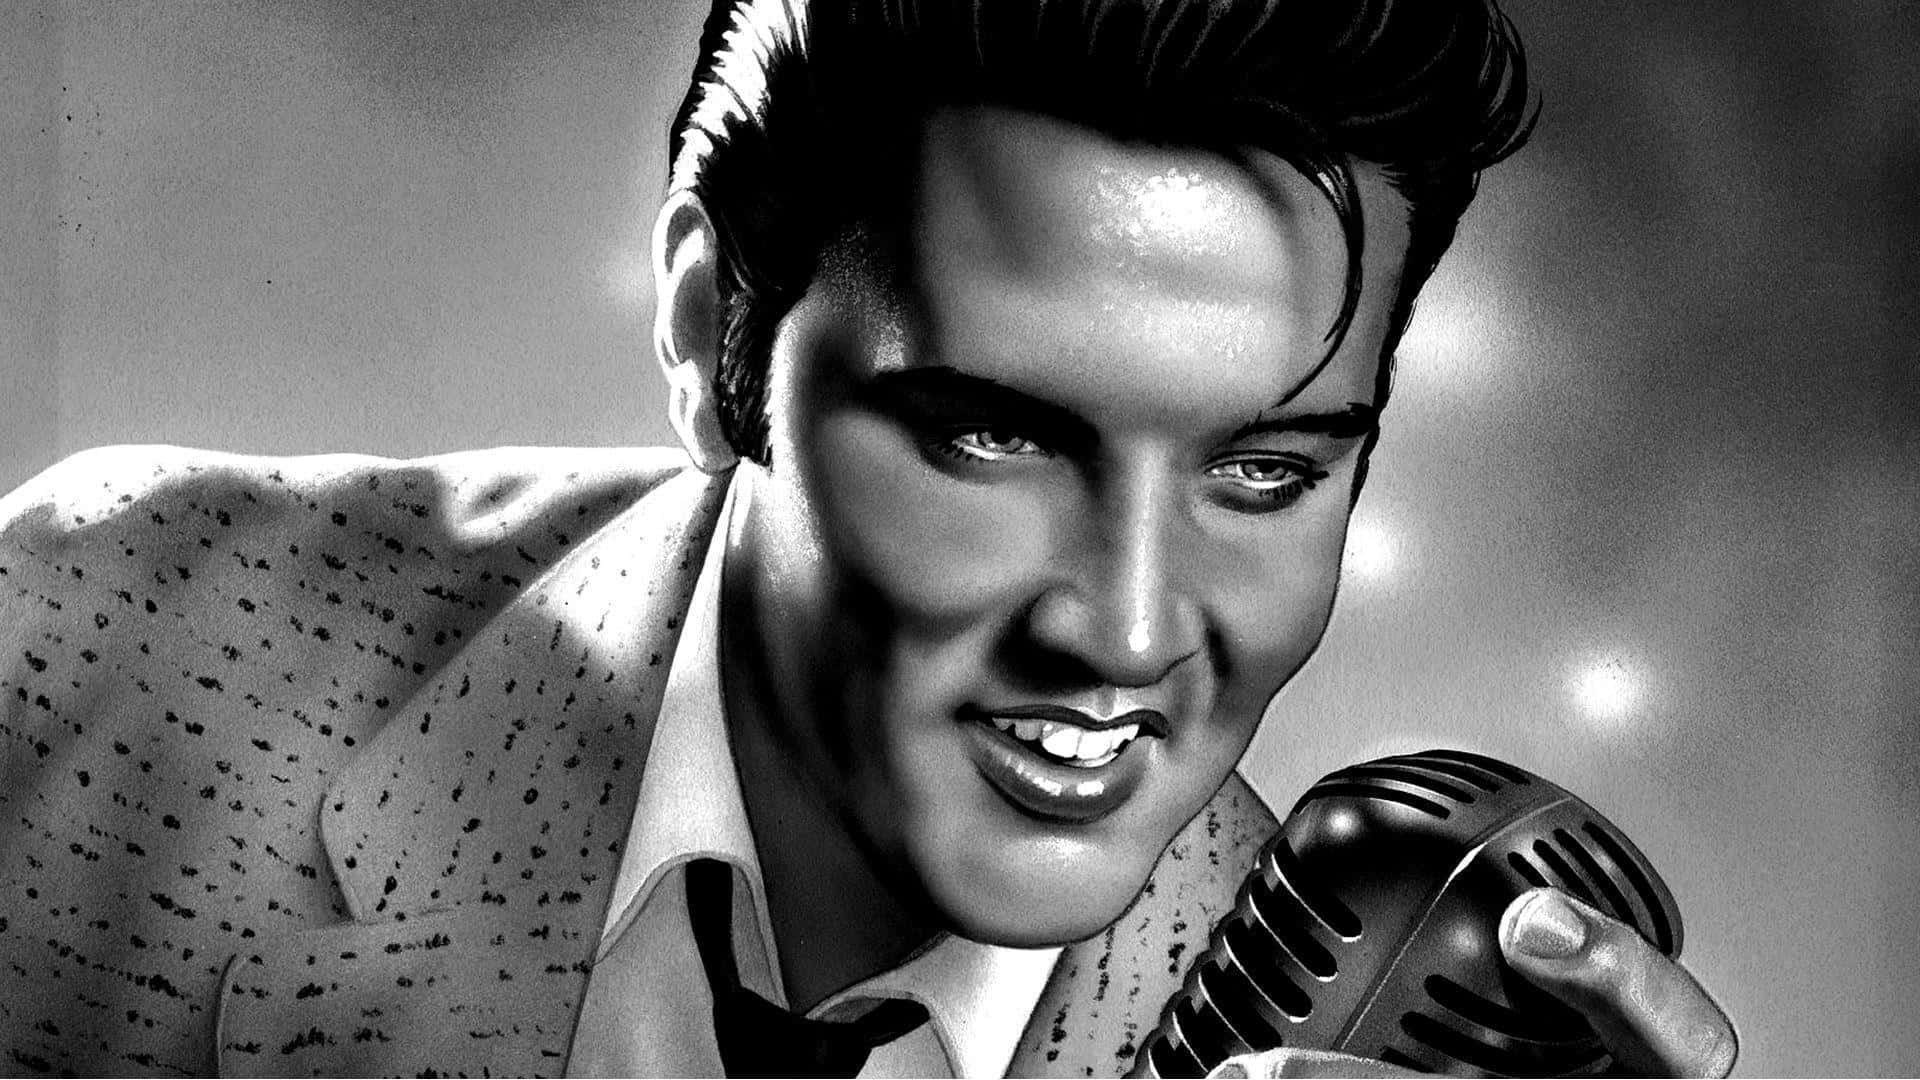 Etklassisk Portræt Af Elvis Presley, Den Legendariske Musiker.